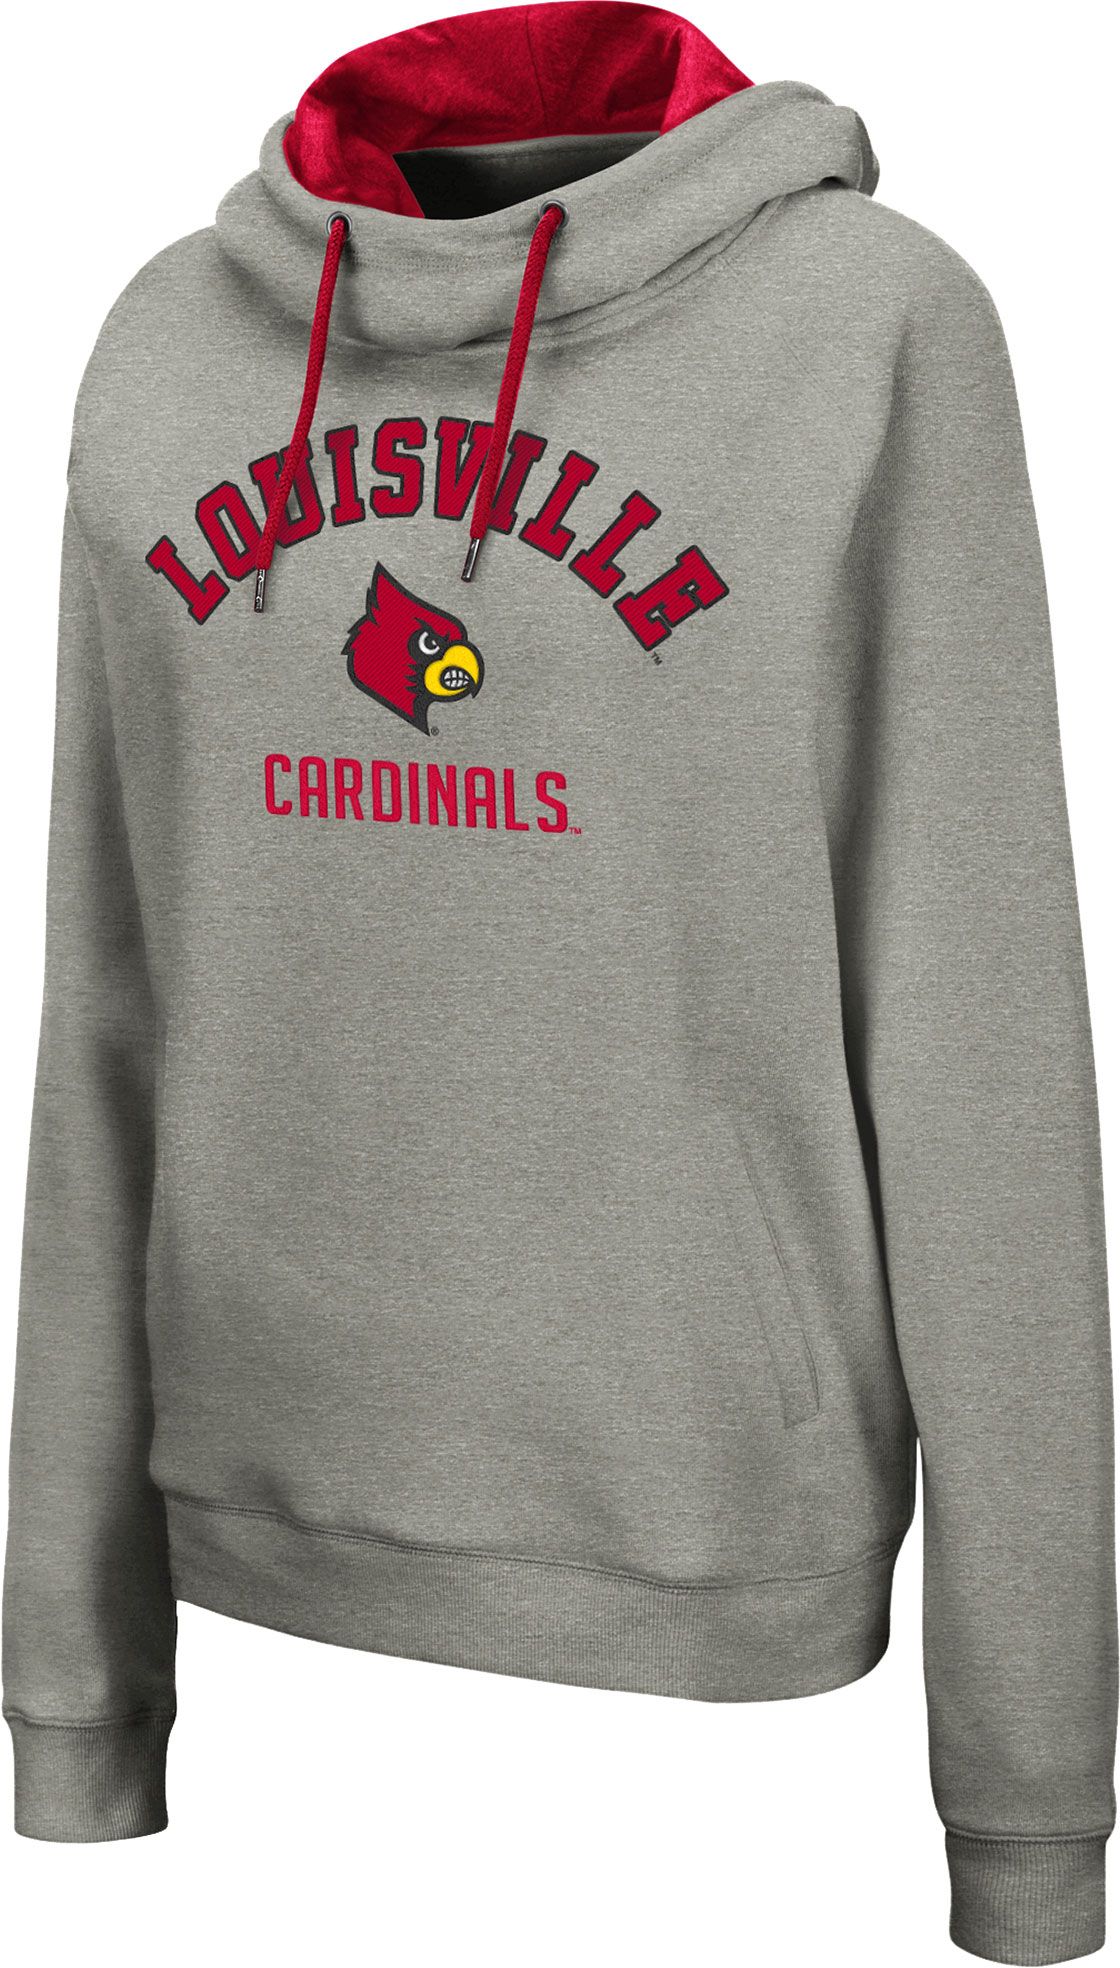 louisville cardinal merchandise